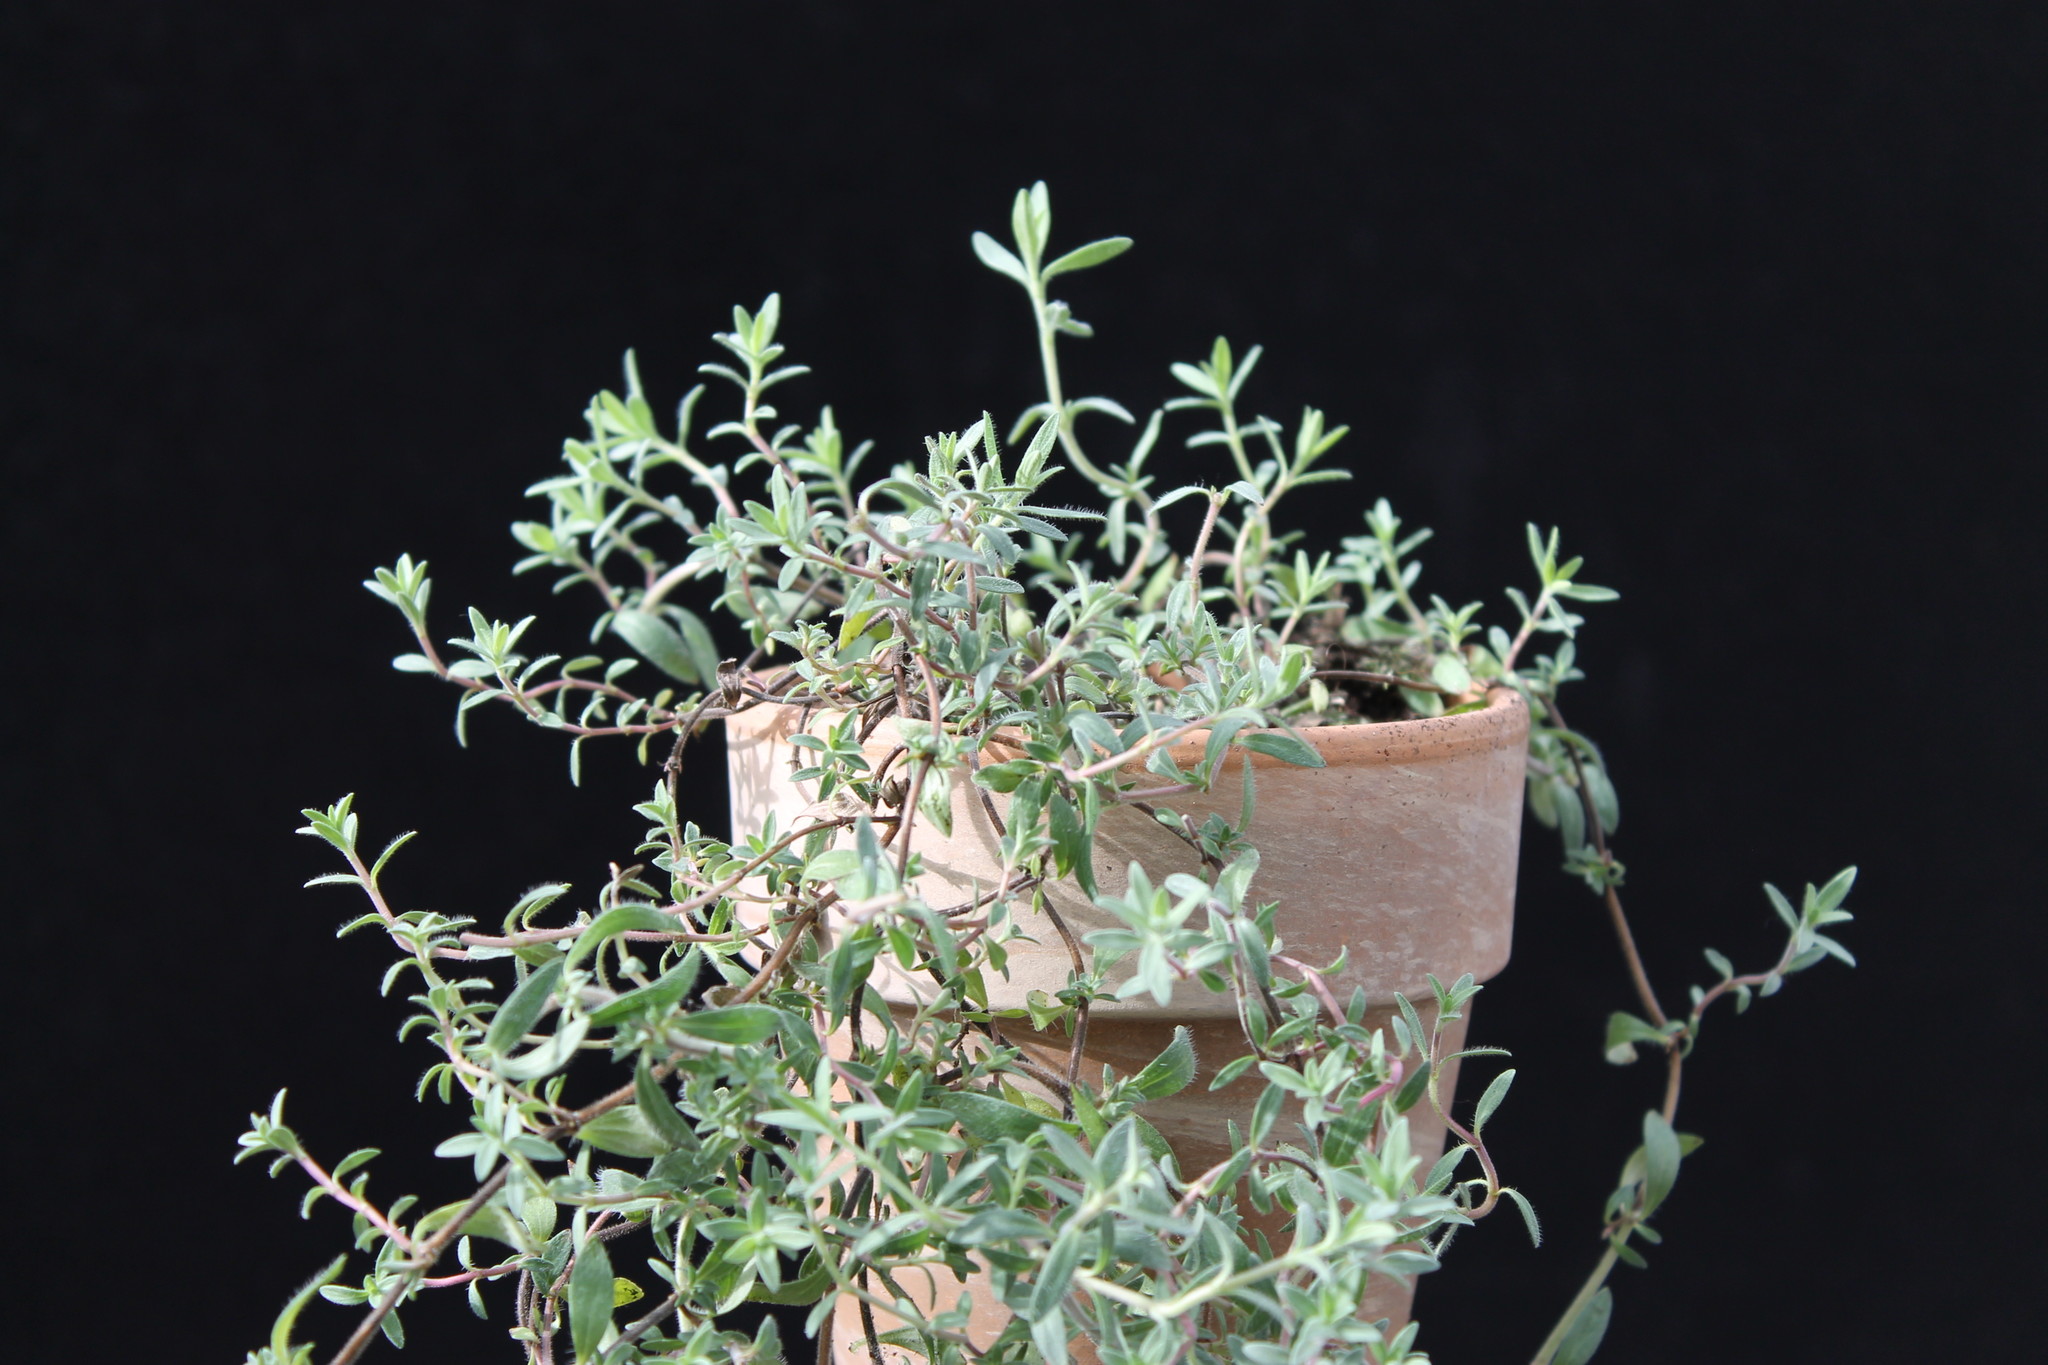 Rosen-Thymian - Thymus species